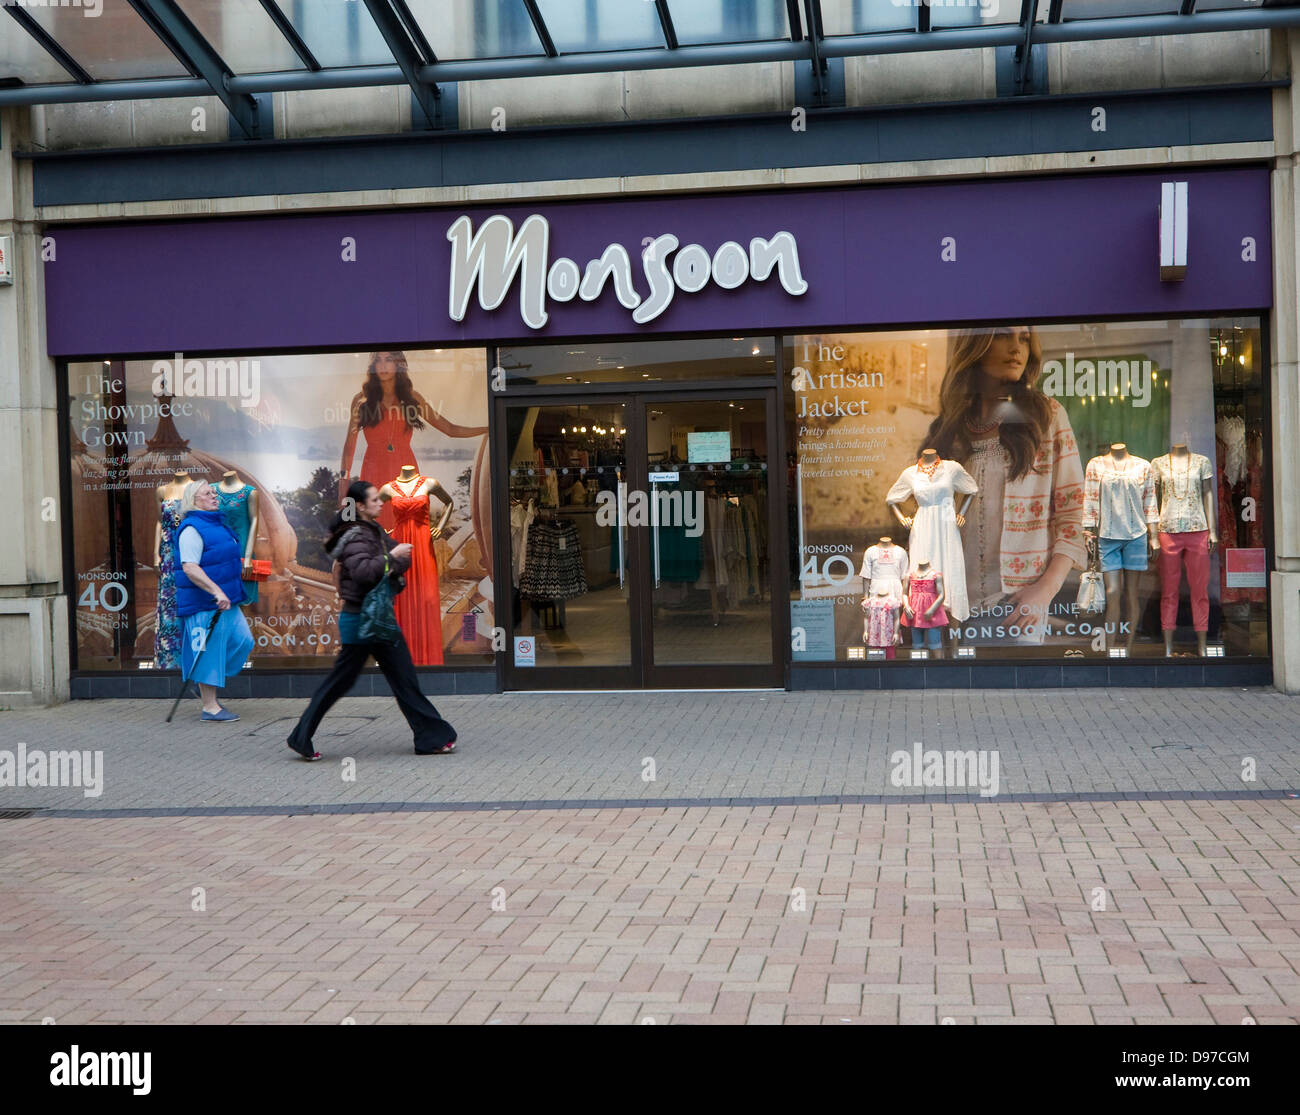 Monsoon abbigliamento fashion shop Swindon, Wiltshire, Inghilterra, Regno Unito Foto Stock